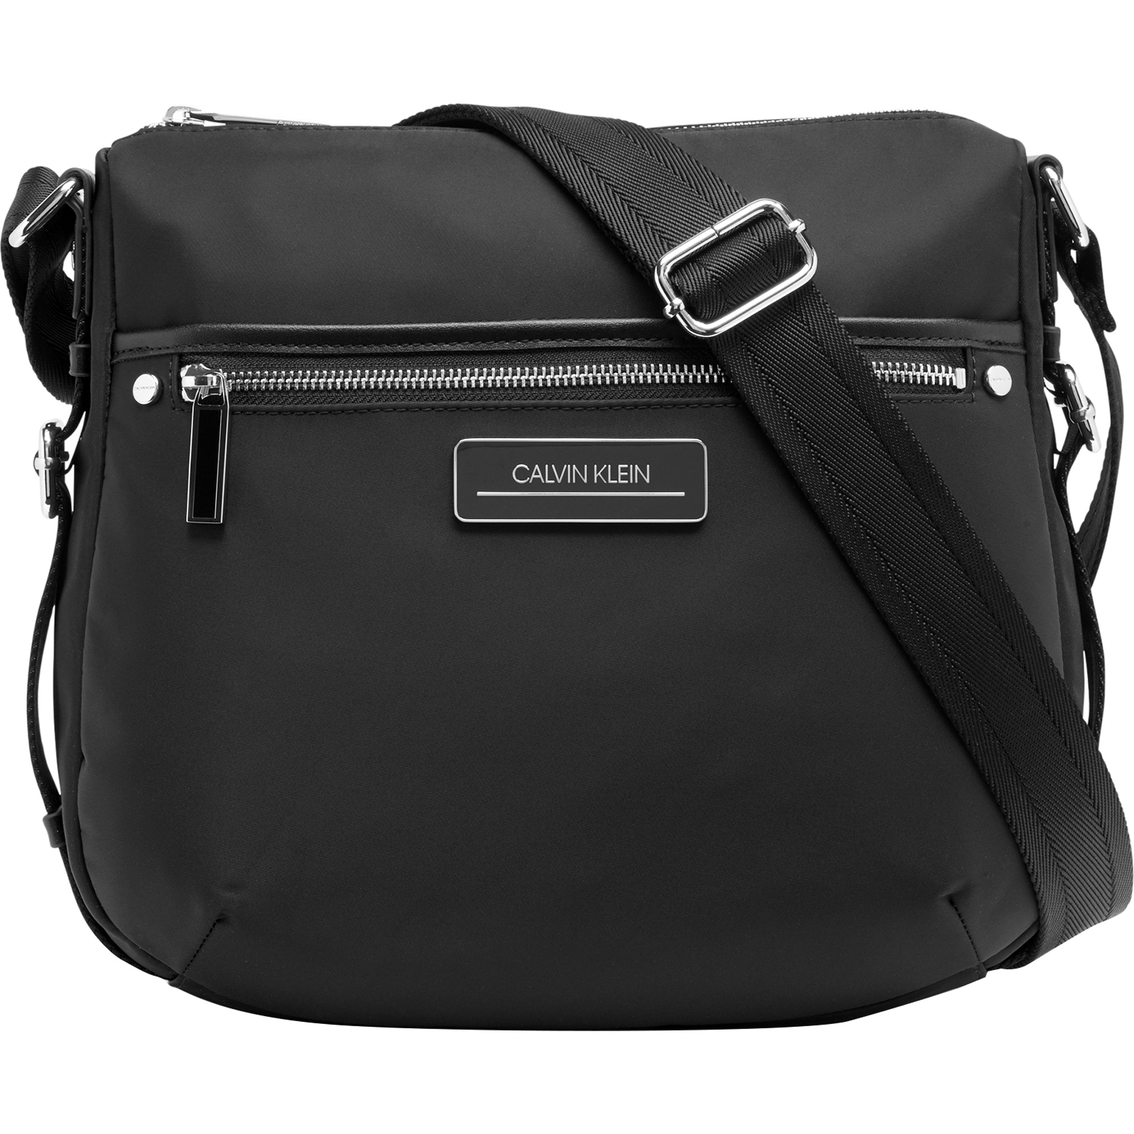 Calvin Klein Sussex Nylon Messenger Bag | Messenger Bags | Clothing ...